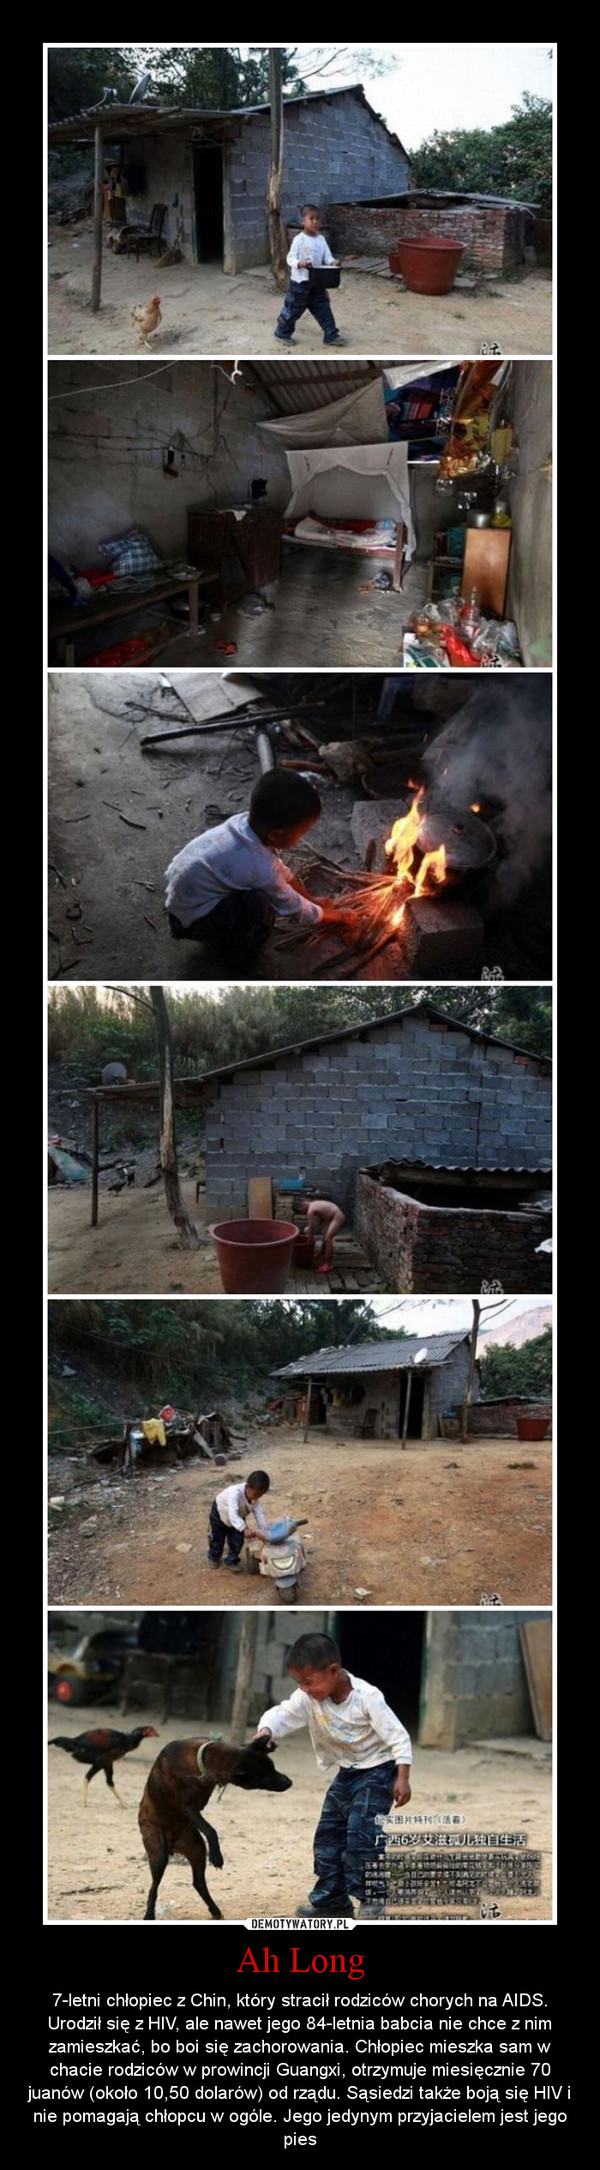 Ah Long – 7-letni chłopiec z Chin, który stracił rodziców chorych na AIDS. Urodził się z HIV, ale nawet jego 84-letnia babcia nie chce z nim zamieszkać, bo boi się zachorowania. Chłopiec mieszka sam w chacie rodziców w prowincji Guangxi, otrzymuje miesięcznie 70 juanów (około 10,50 dolarów) od rządu. Sąsiedzi także boją się HIV i nie pomagają chłopcu w ogóle. Jego jedynym przyjacielem jest jego pies 